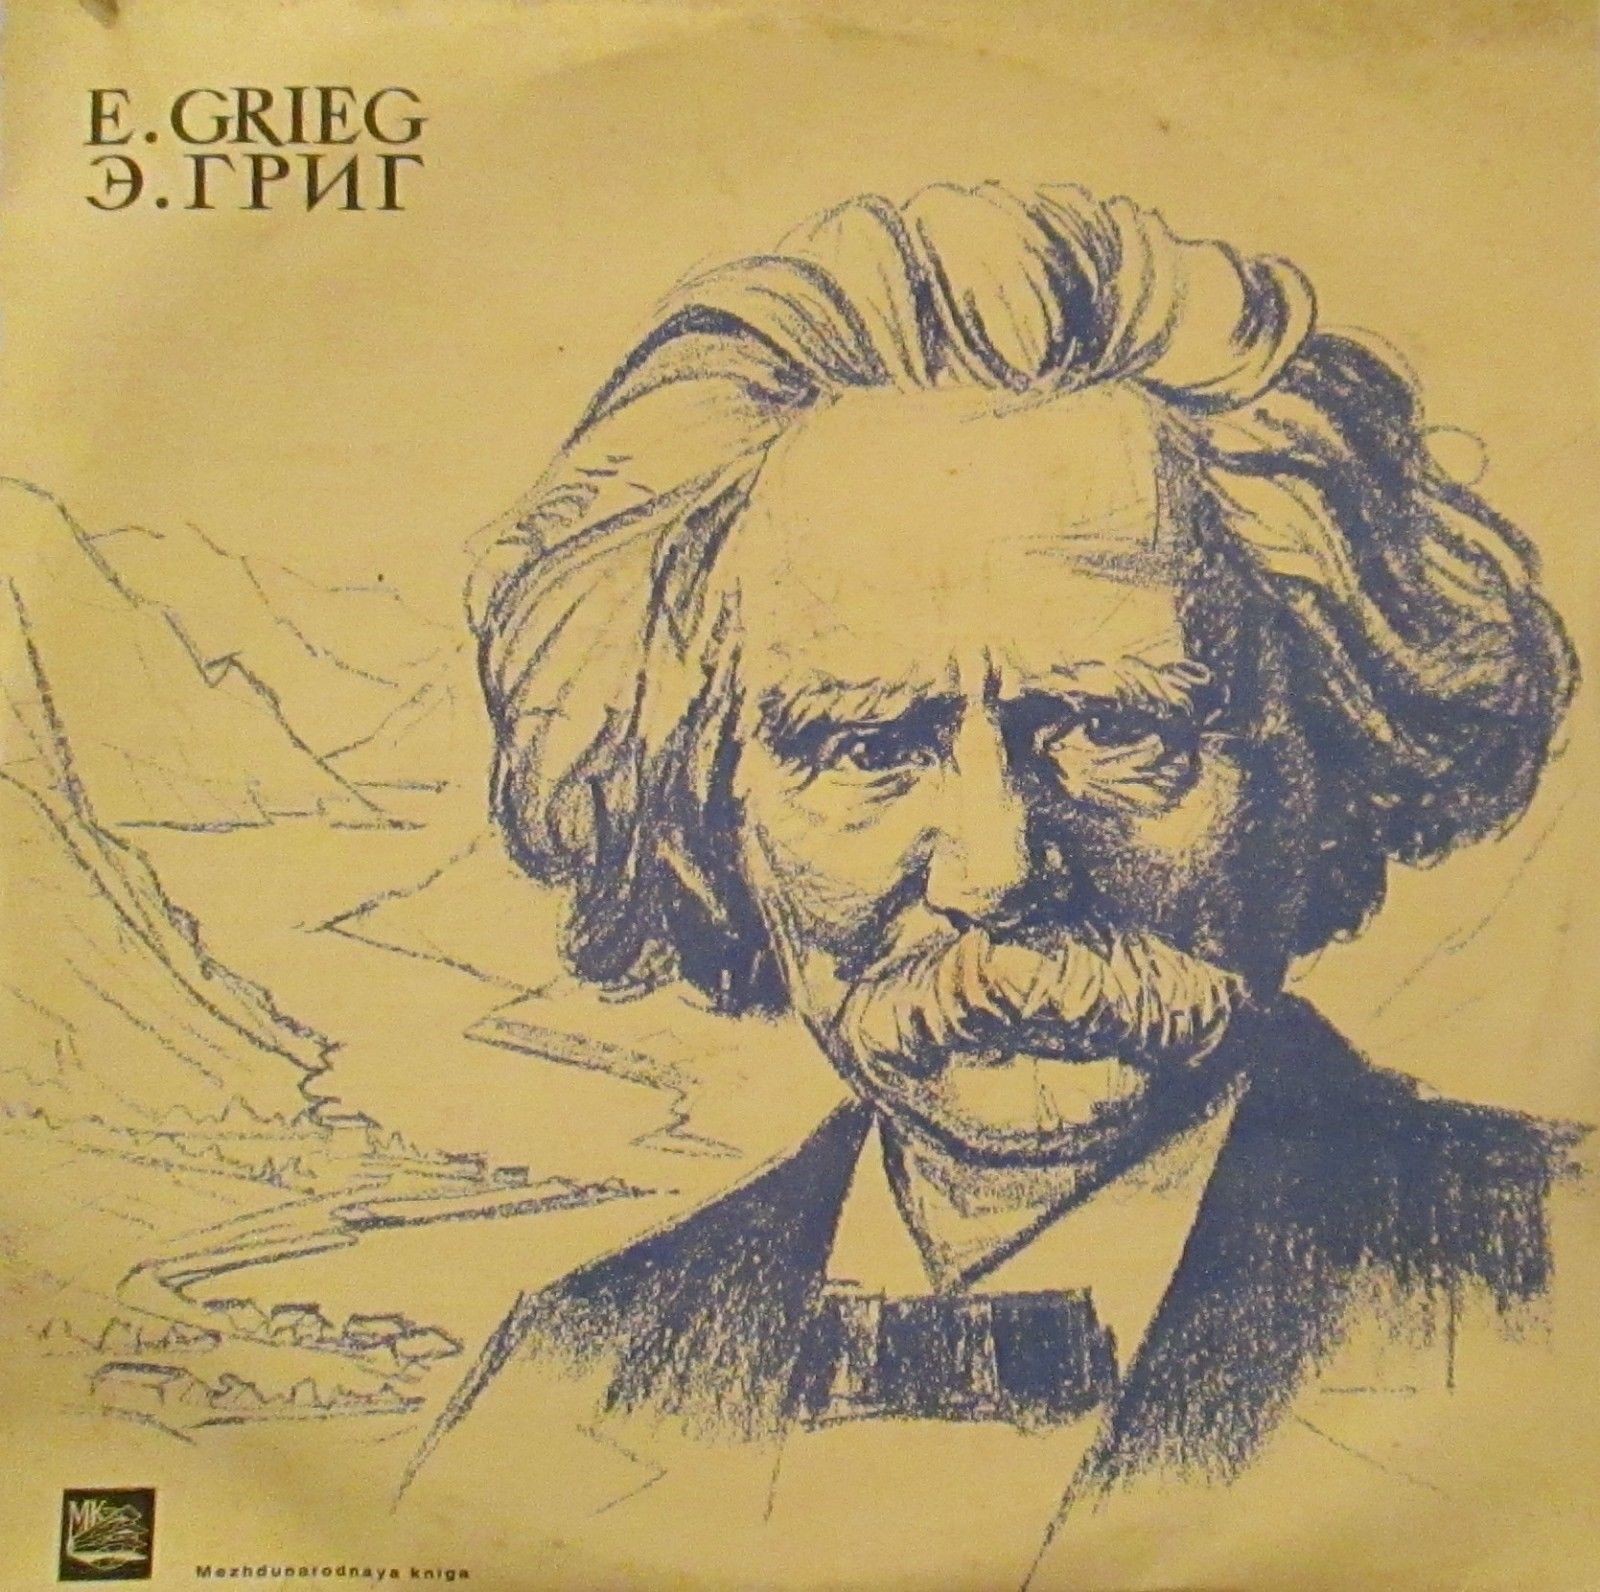 Э. ГРИГ (1843–1907): Сюиты №1 и 2 из музыки к драме Г. Ибсена «Пер Гюнт» (Н. Голованов)